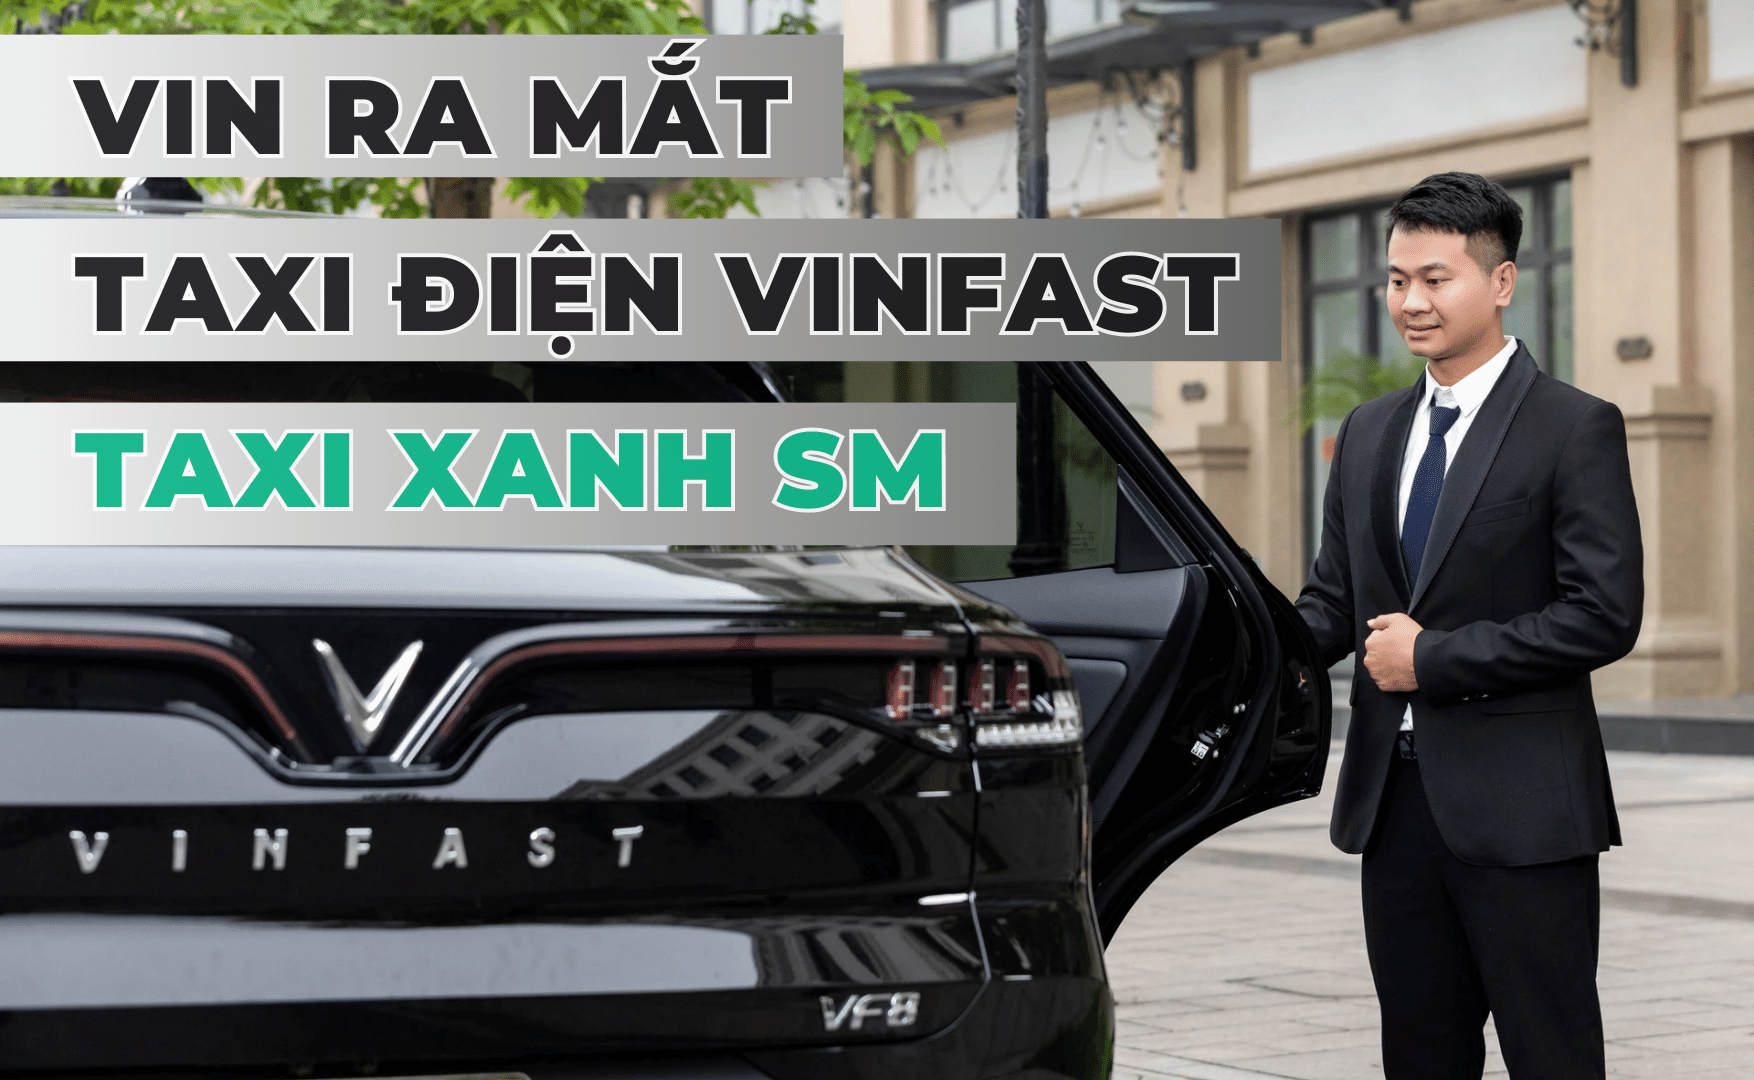 Ra mắt taxi điện VinFast | Taxi Xanh SM chạy thử tại Hà Nội